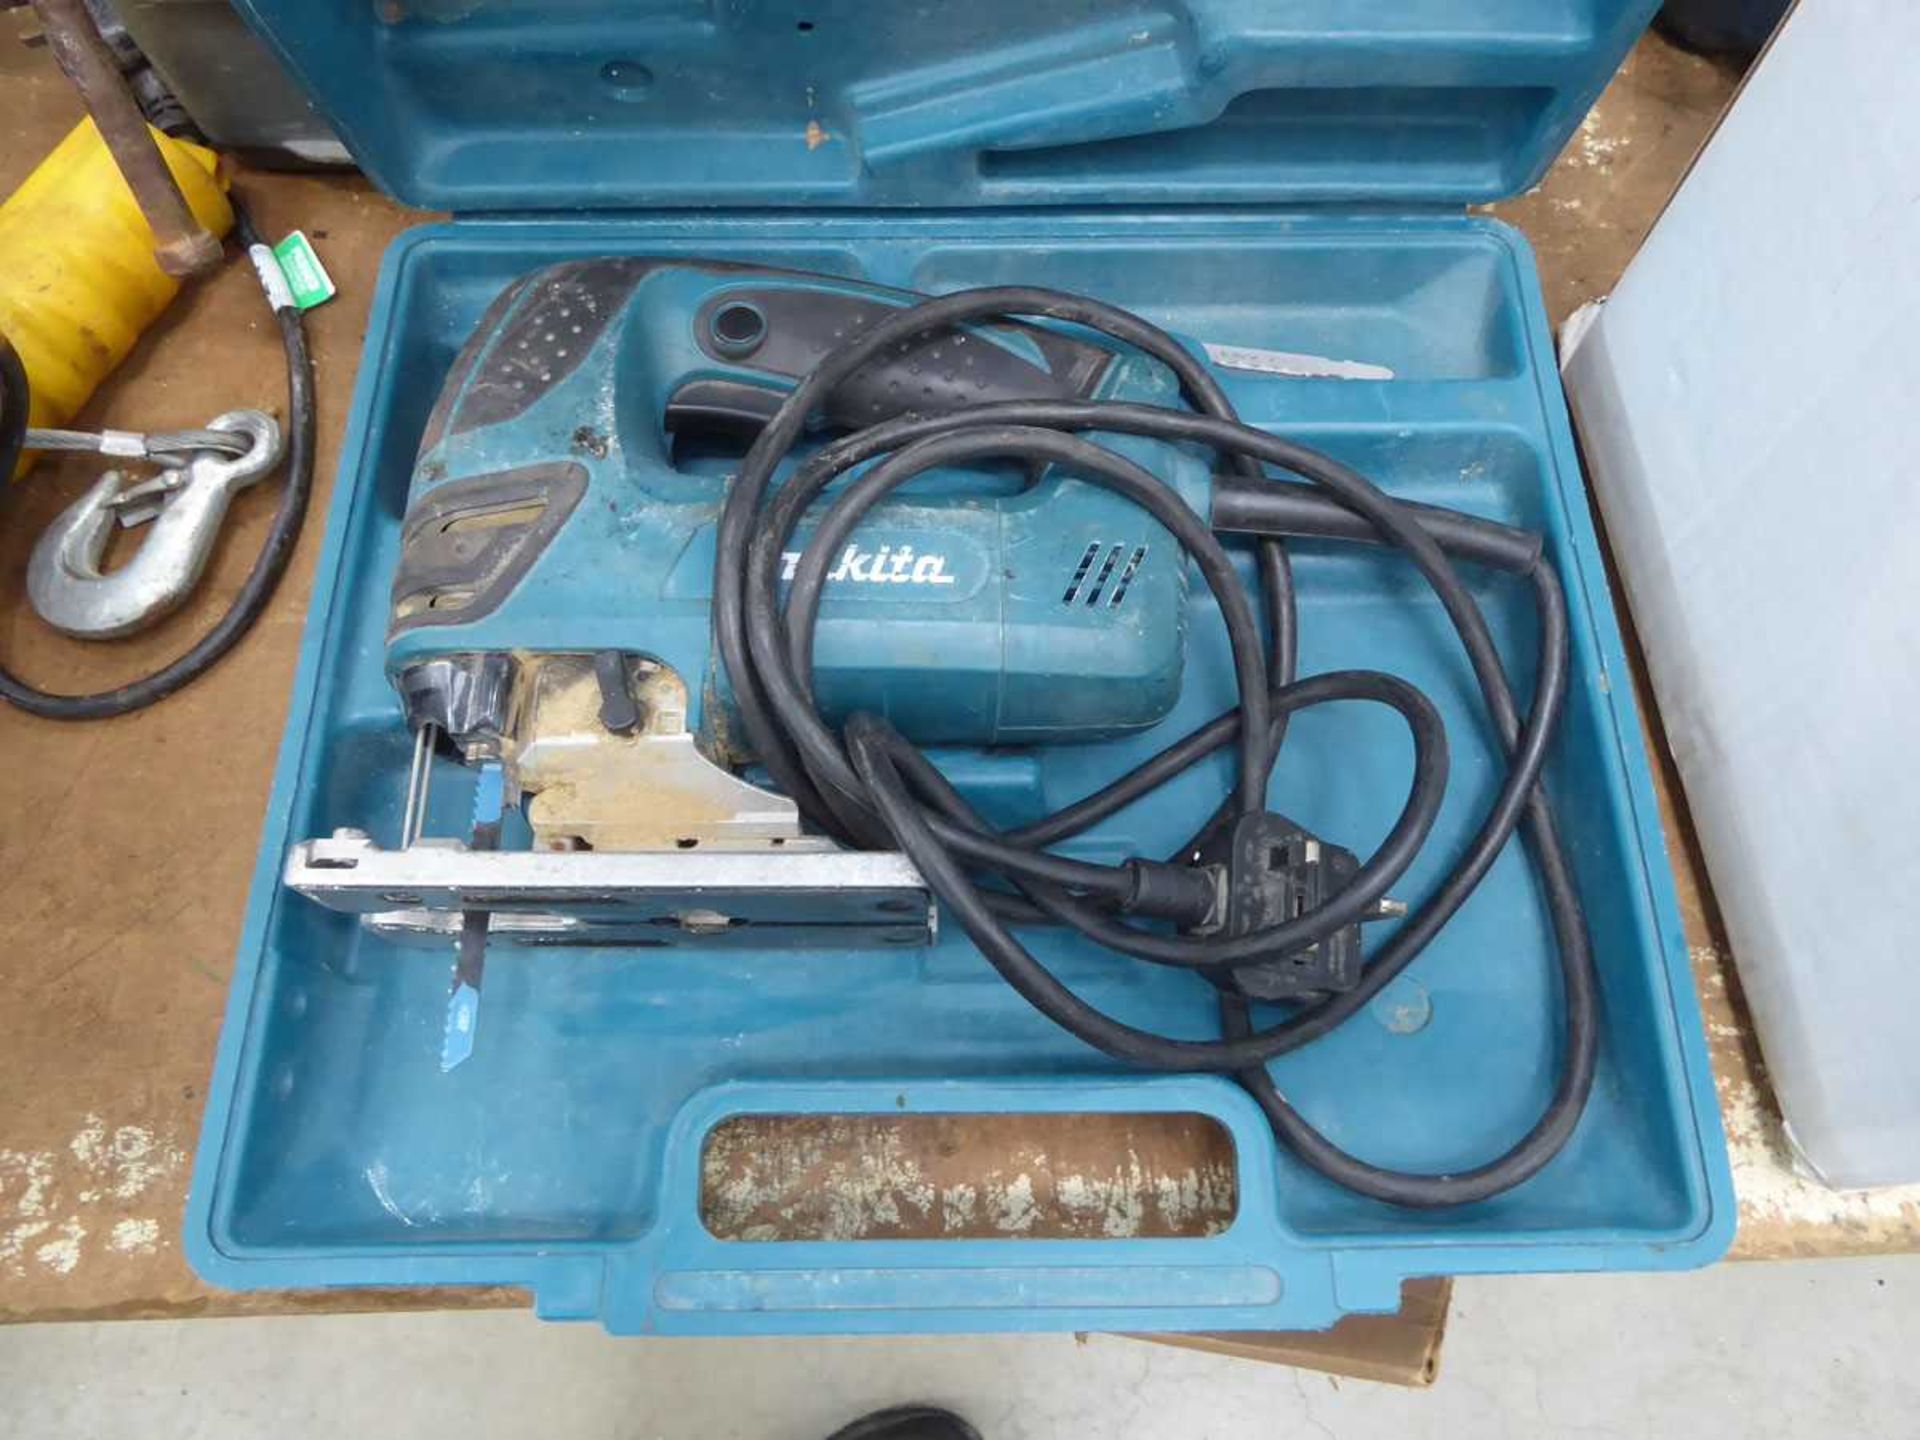 Makita electric jigsaw, plus a box of drill bits